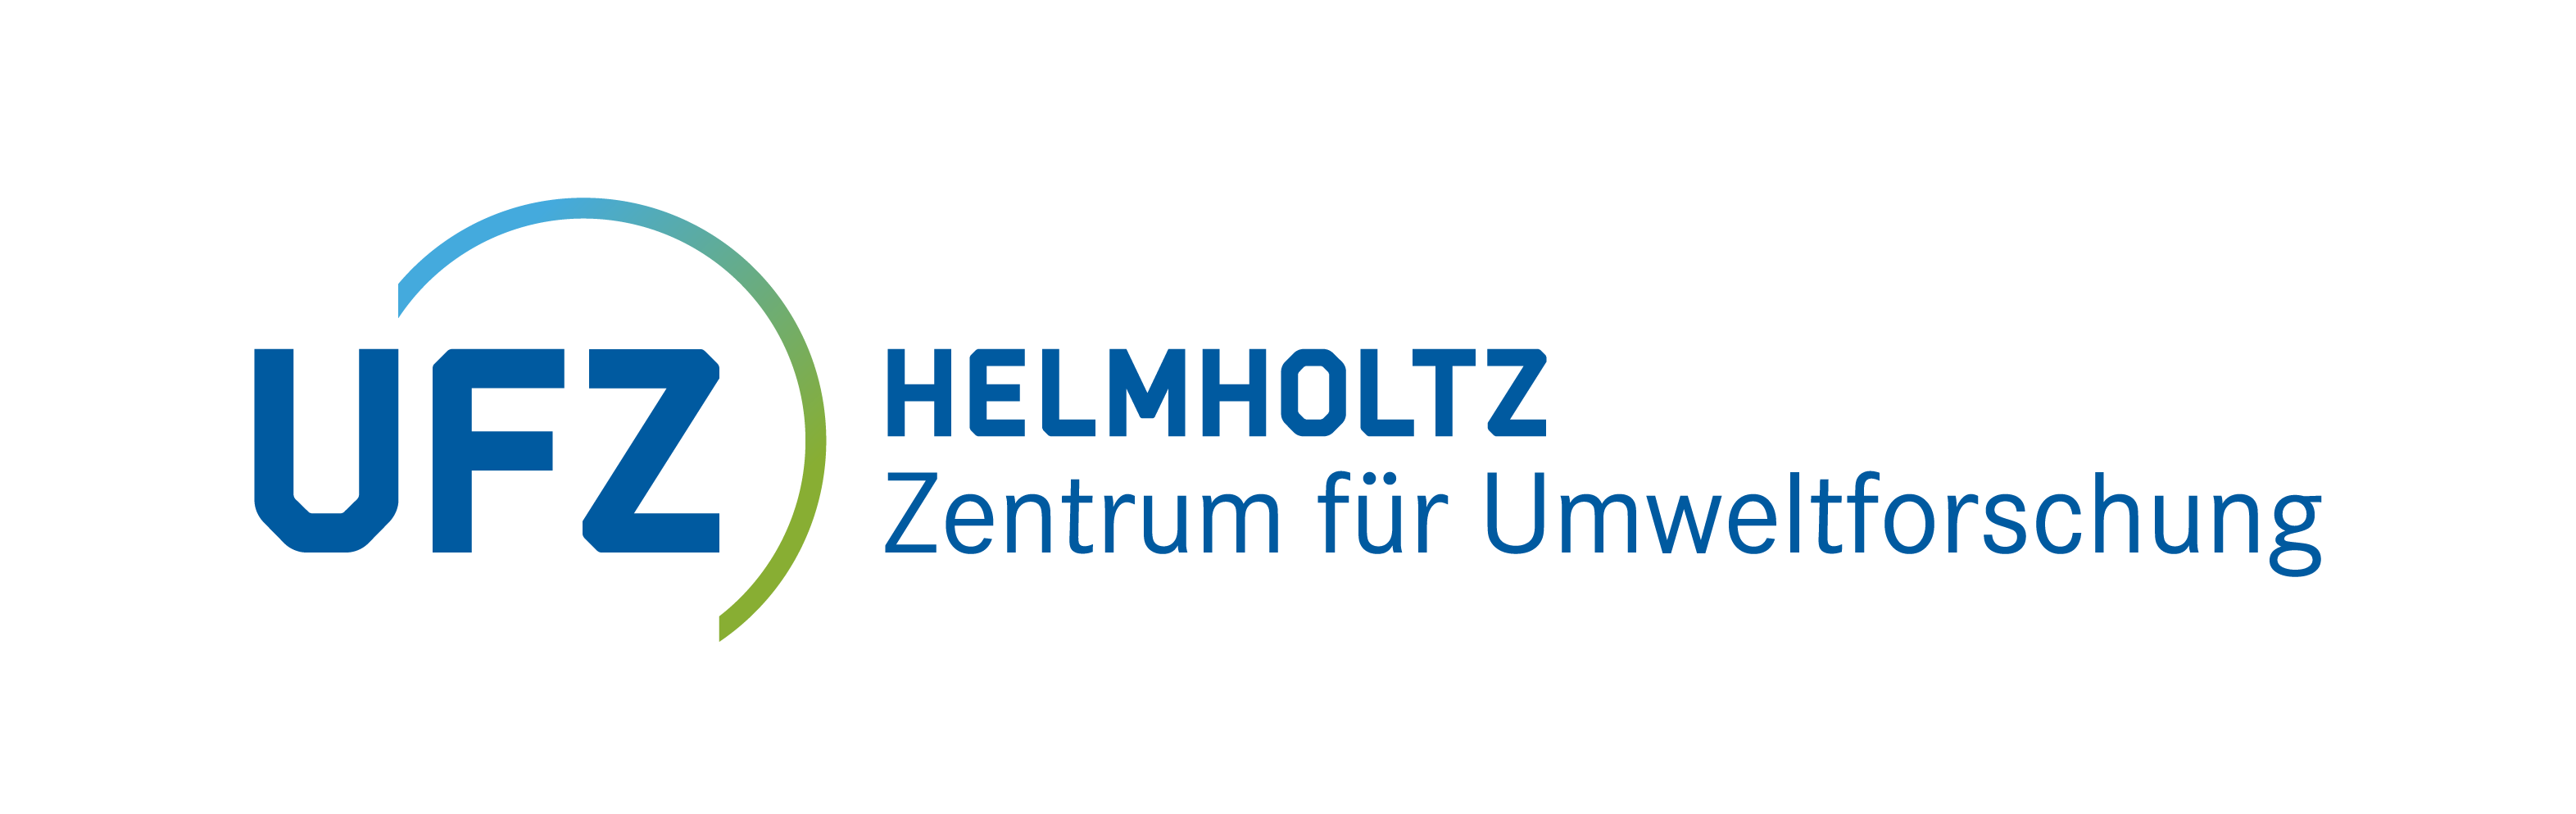 Logo Helmholtz-Zentrum für Umweltforschung - UFZ